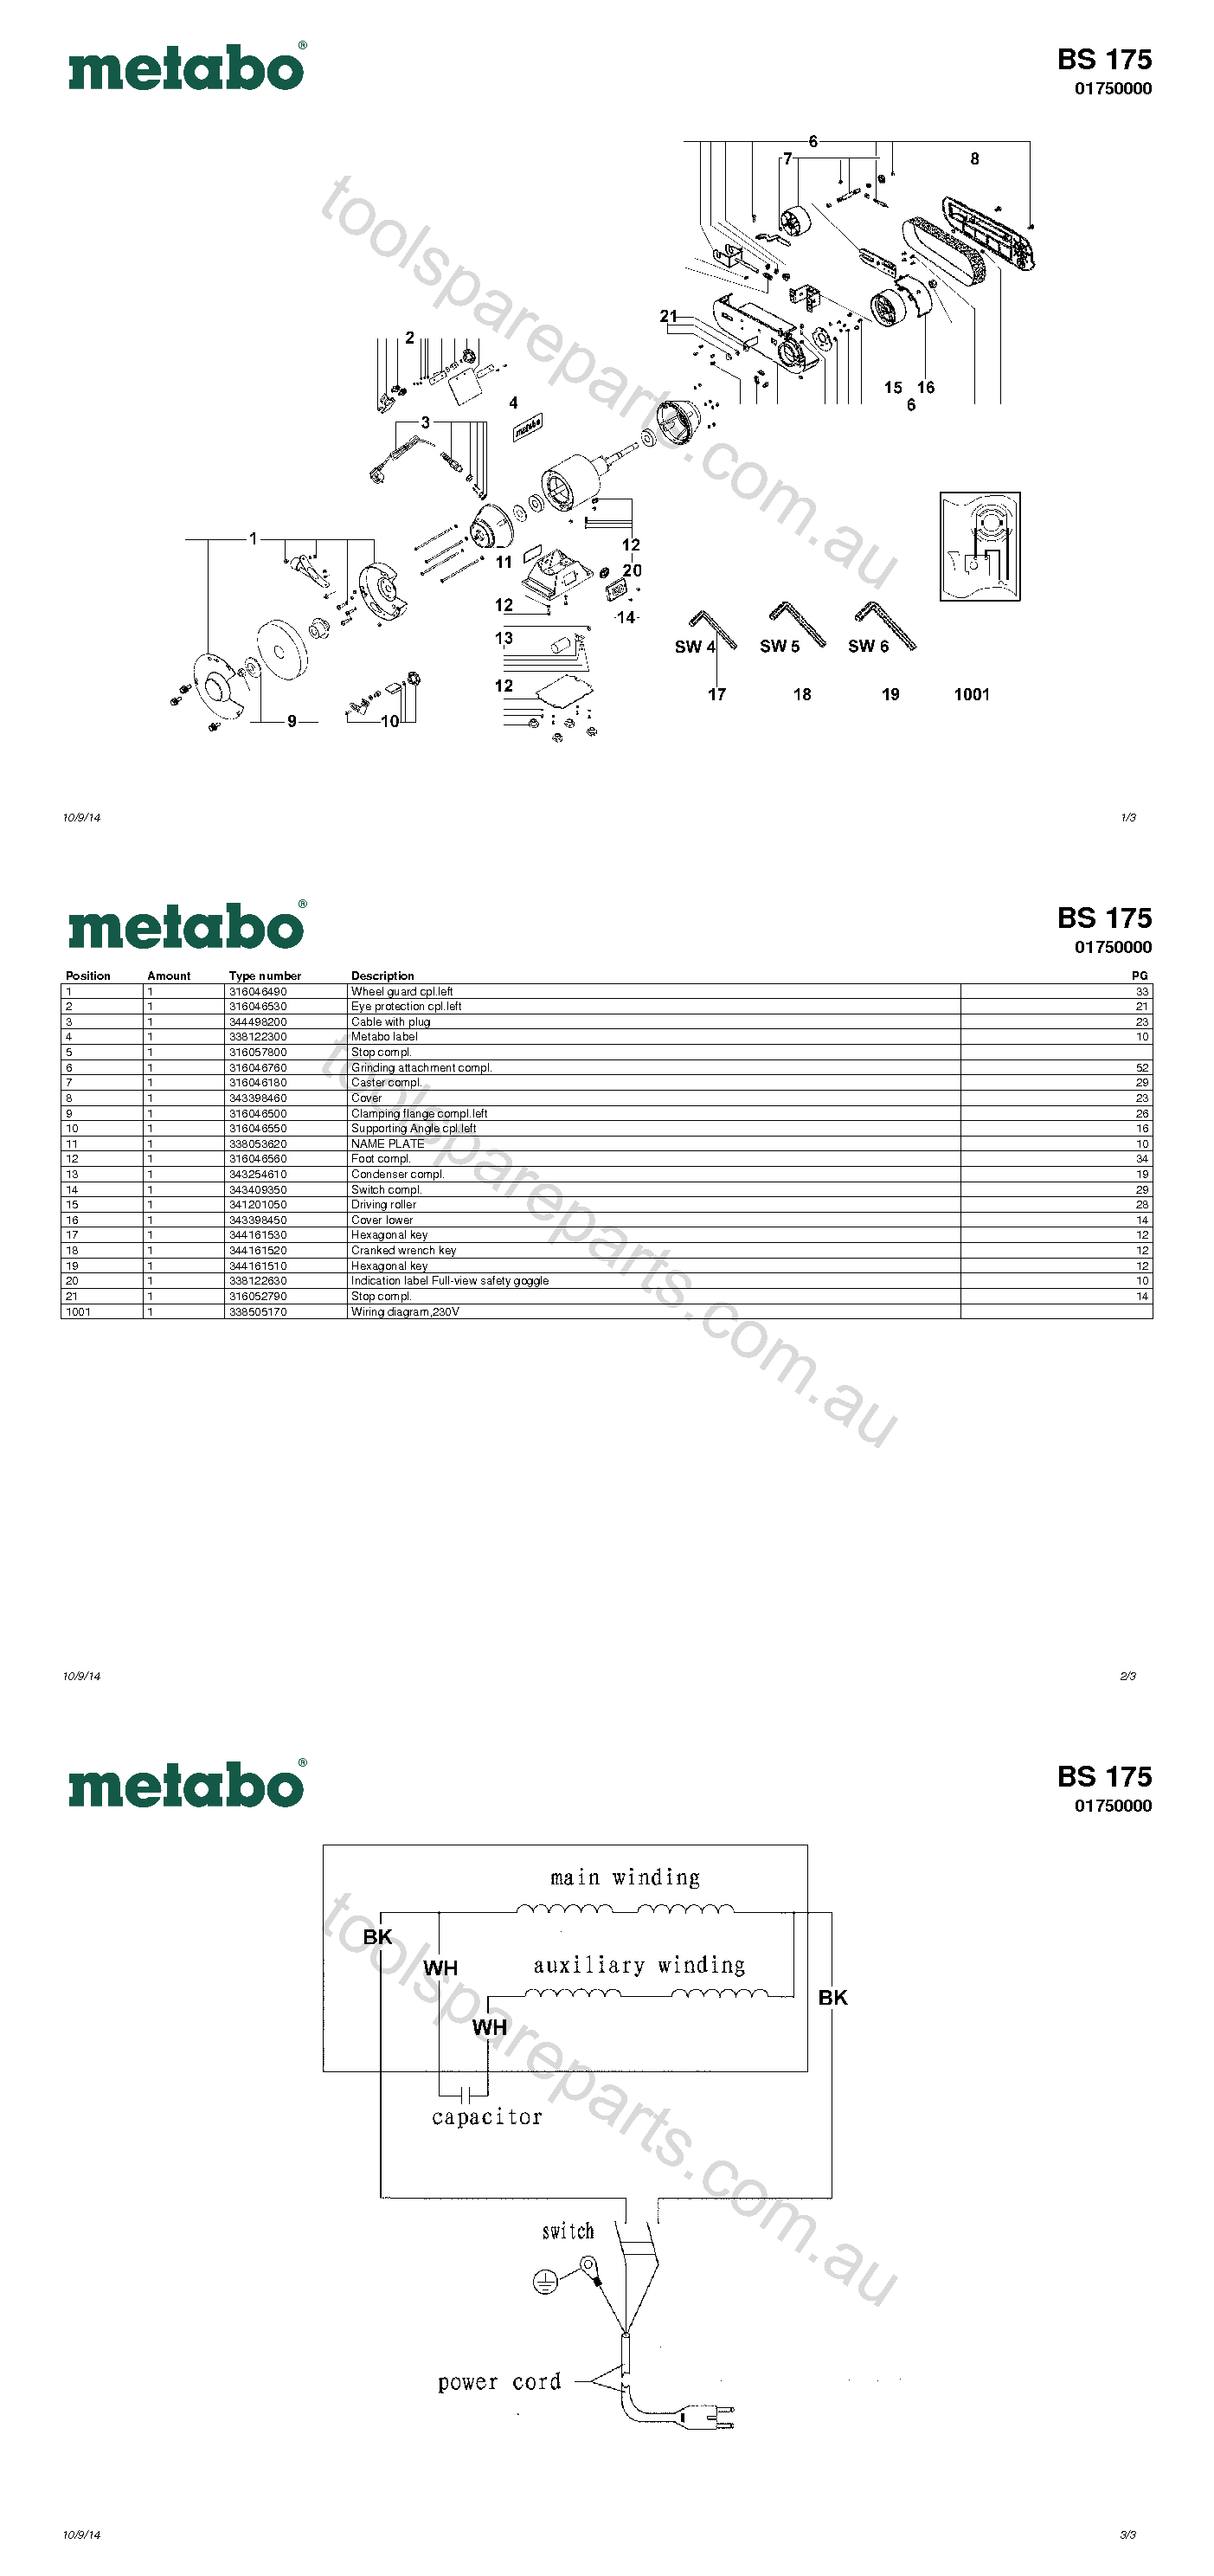 Metabo BS 175 01750000  Diagram 1